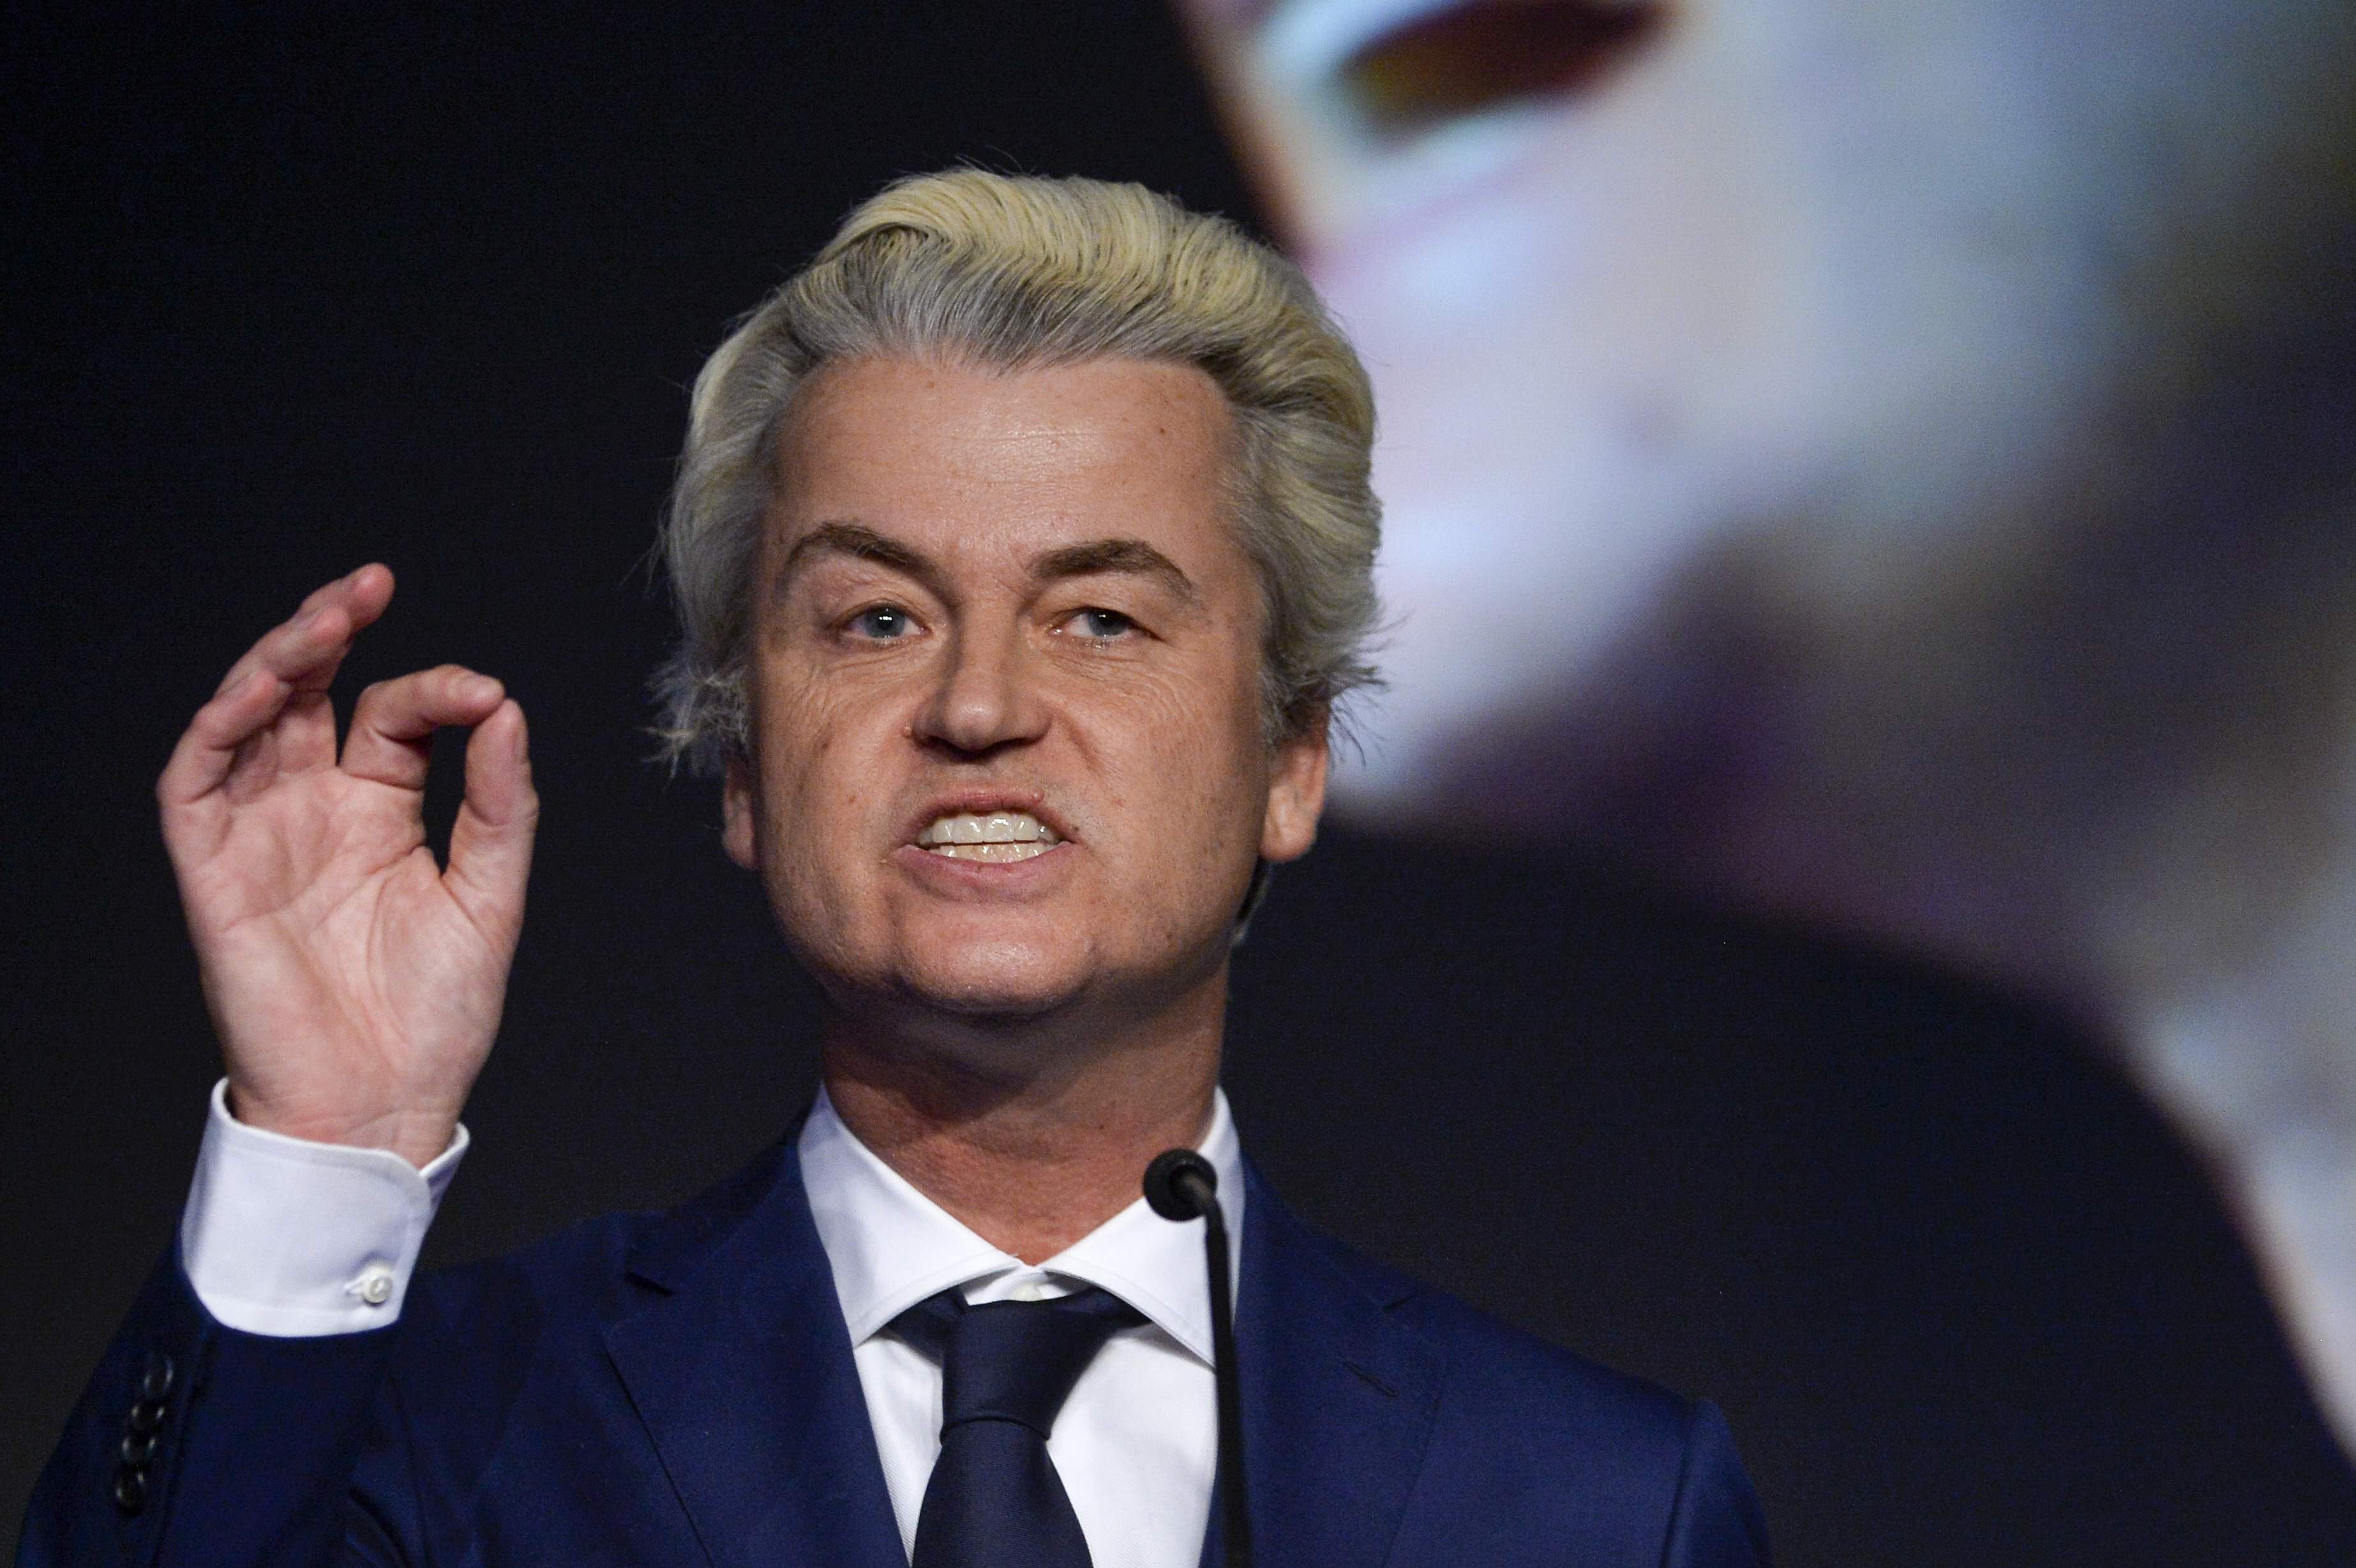 Los Países Bajos confirman el auge de la extrema derecha en las elecciones europeas, según los sondeos